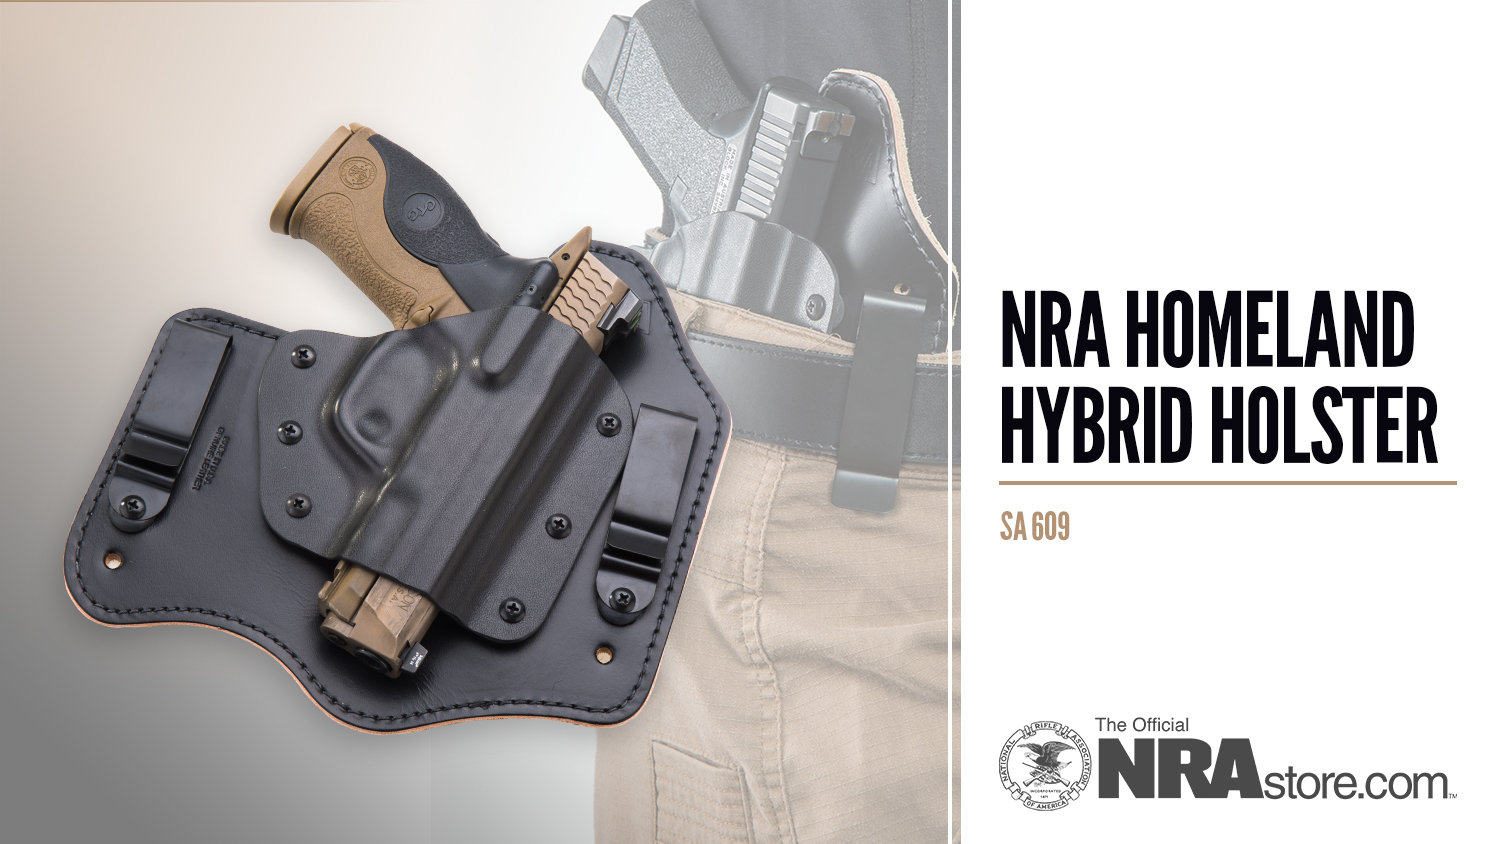 NRA Store Product Highlight: Homeland Hybrid Holster